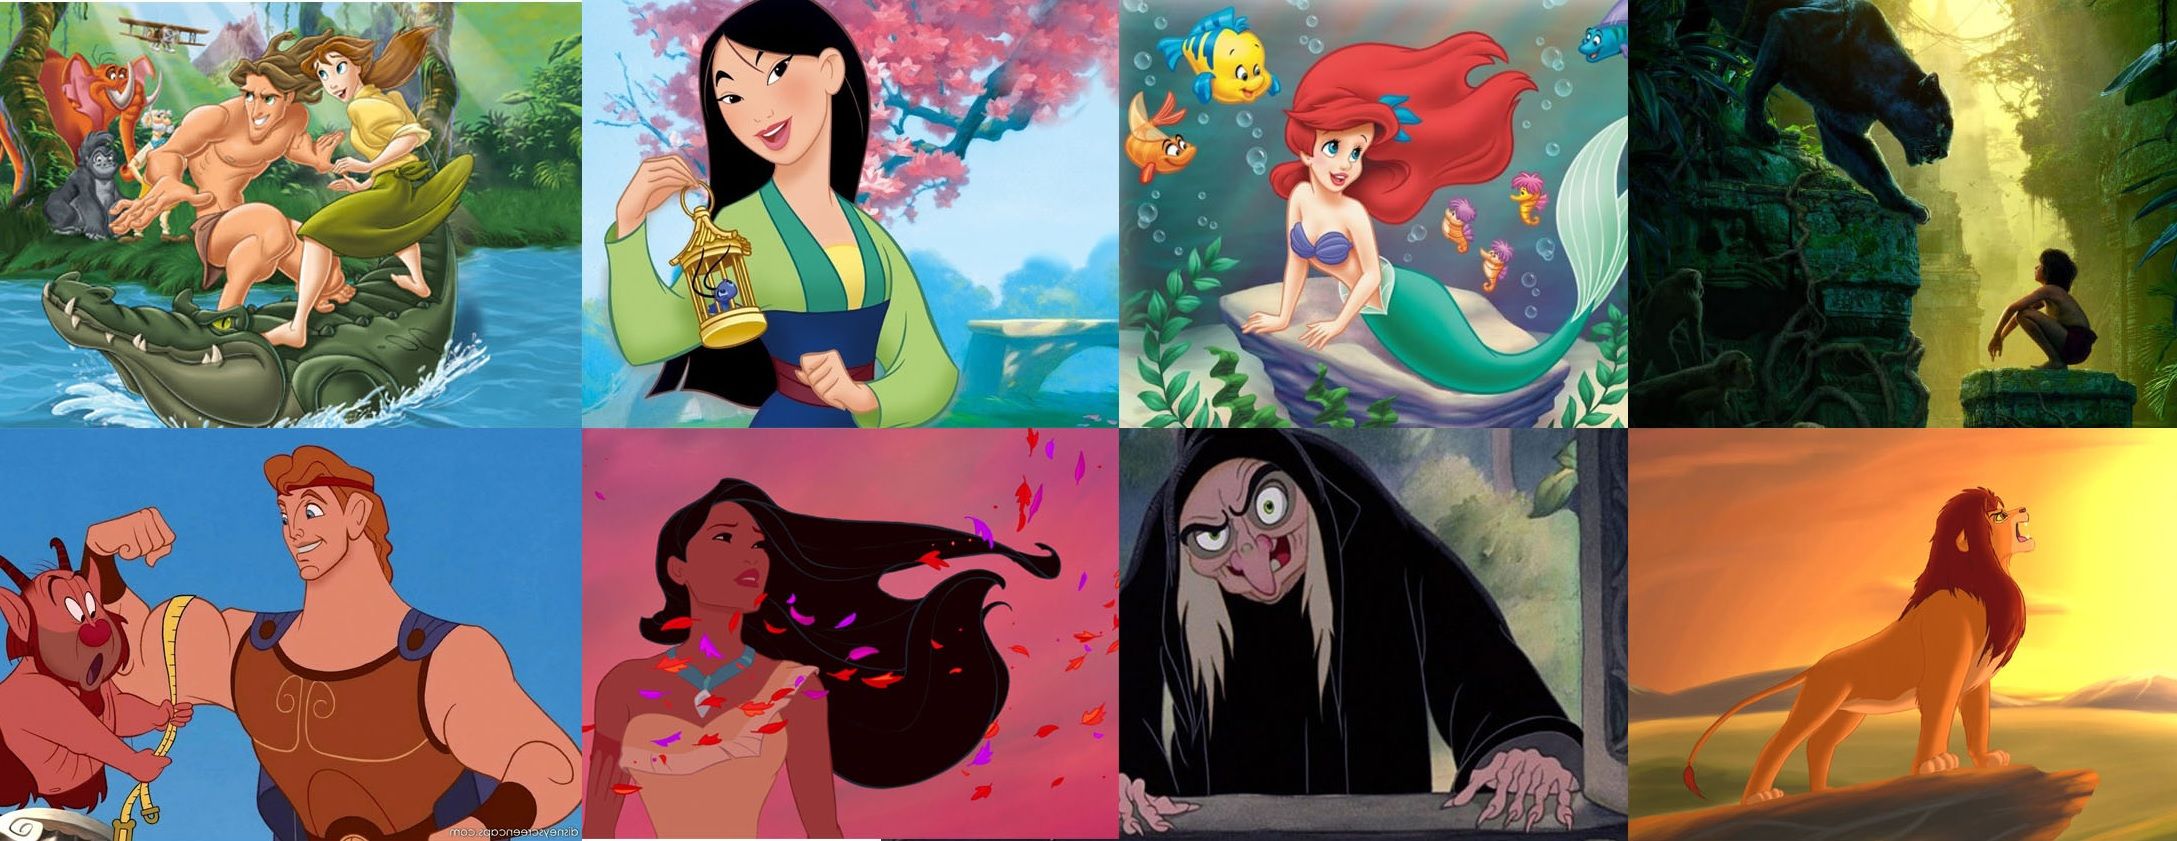 Kinh hoàng phiên bản gốc của 10 bộ phim hoạt hình Disney nổi tiếng